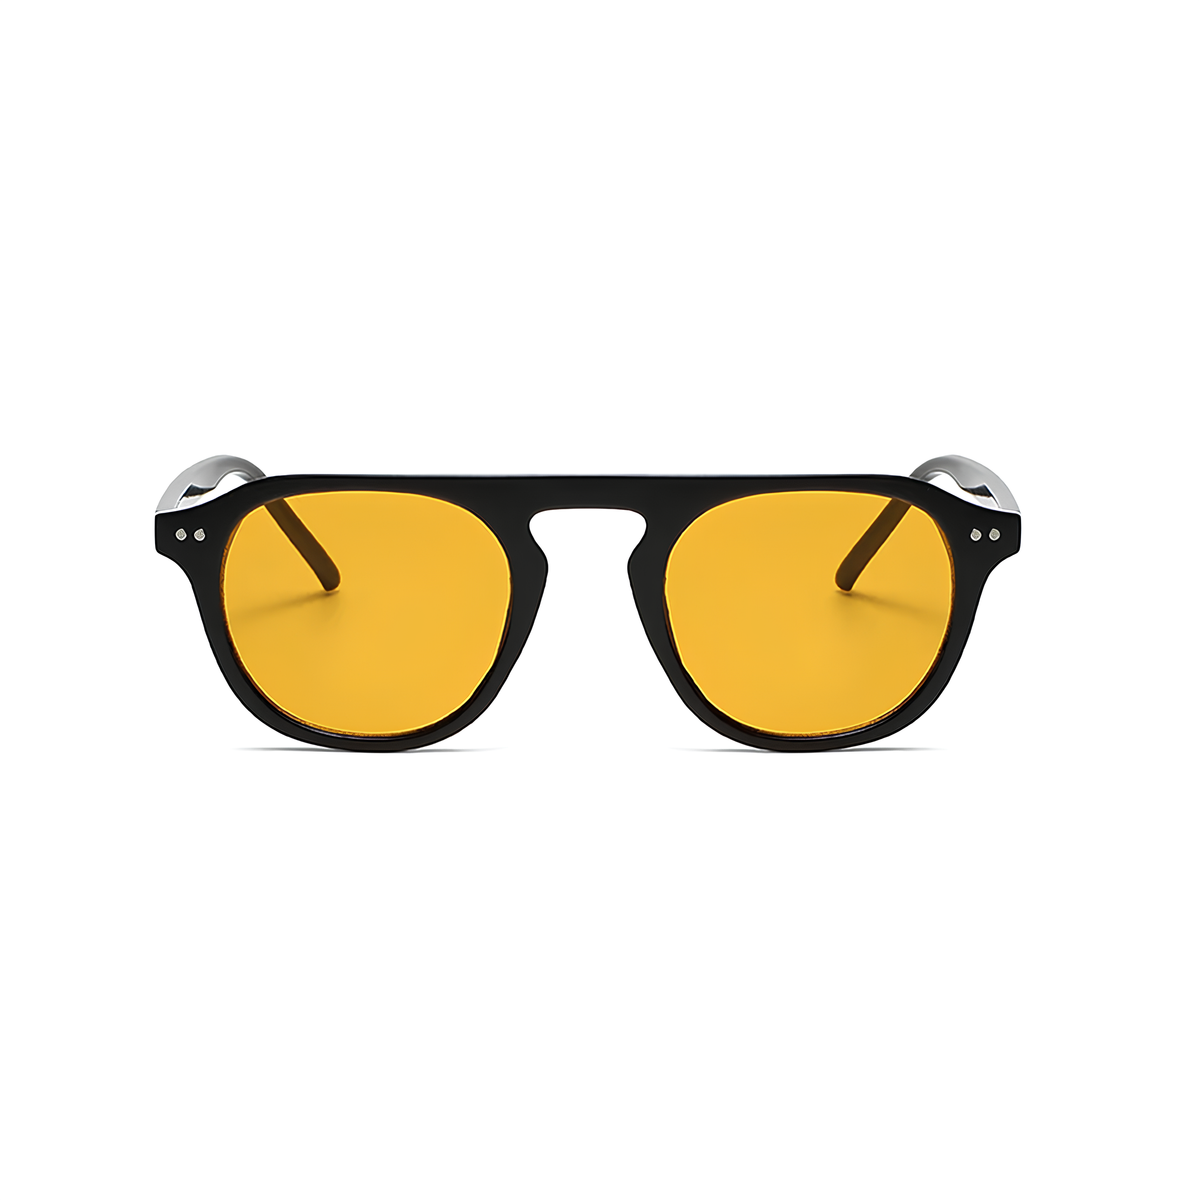 oculos de sol masculino, oculos de sol feminino, oculos de sol redondo